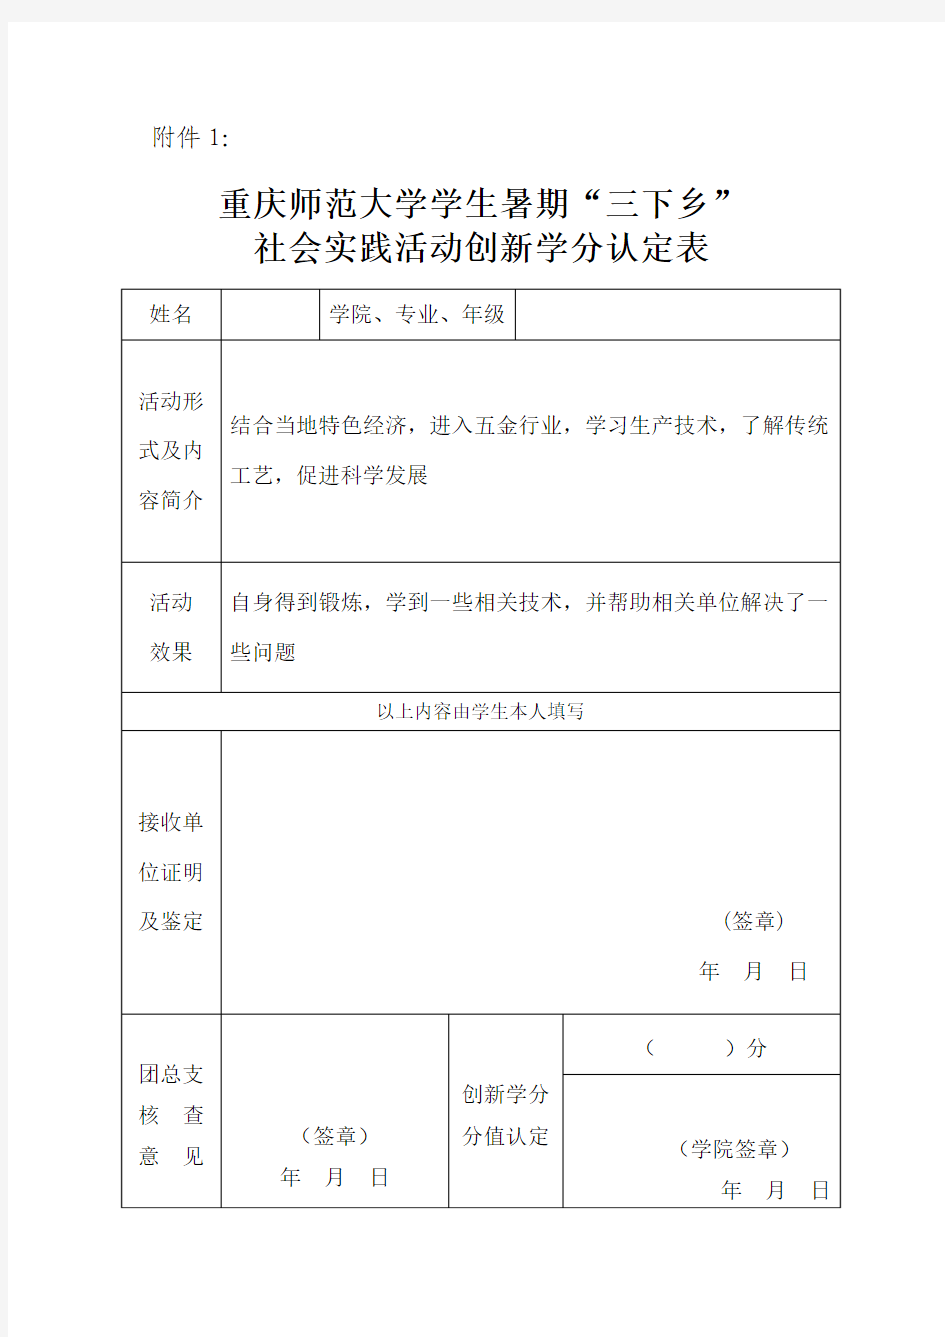 重庆师范大学学生暑期“三下乡”社会实践活动创新学分认定表